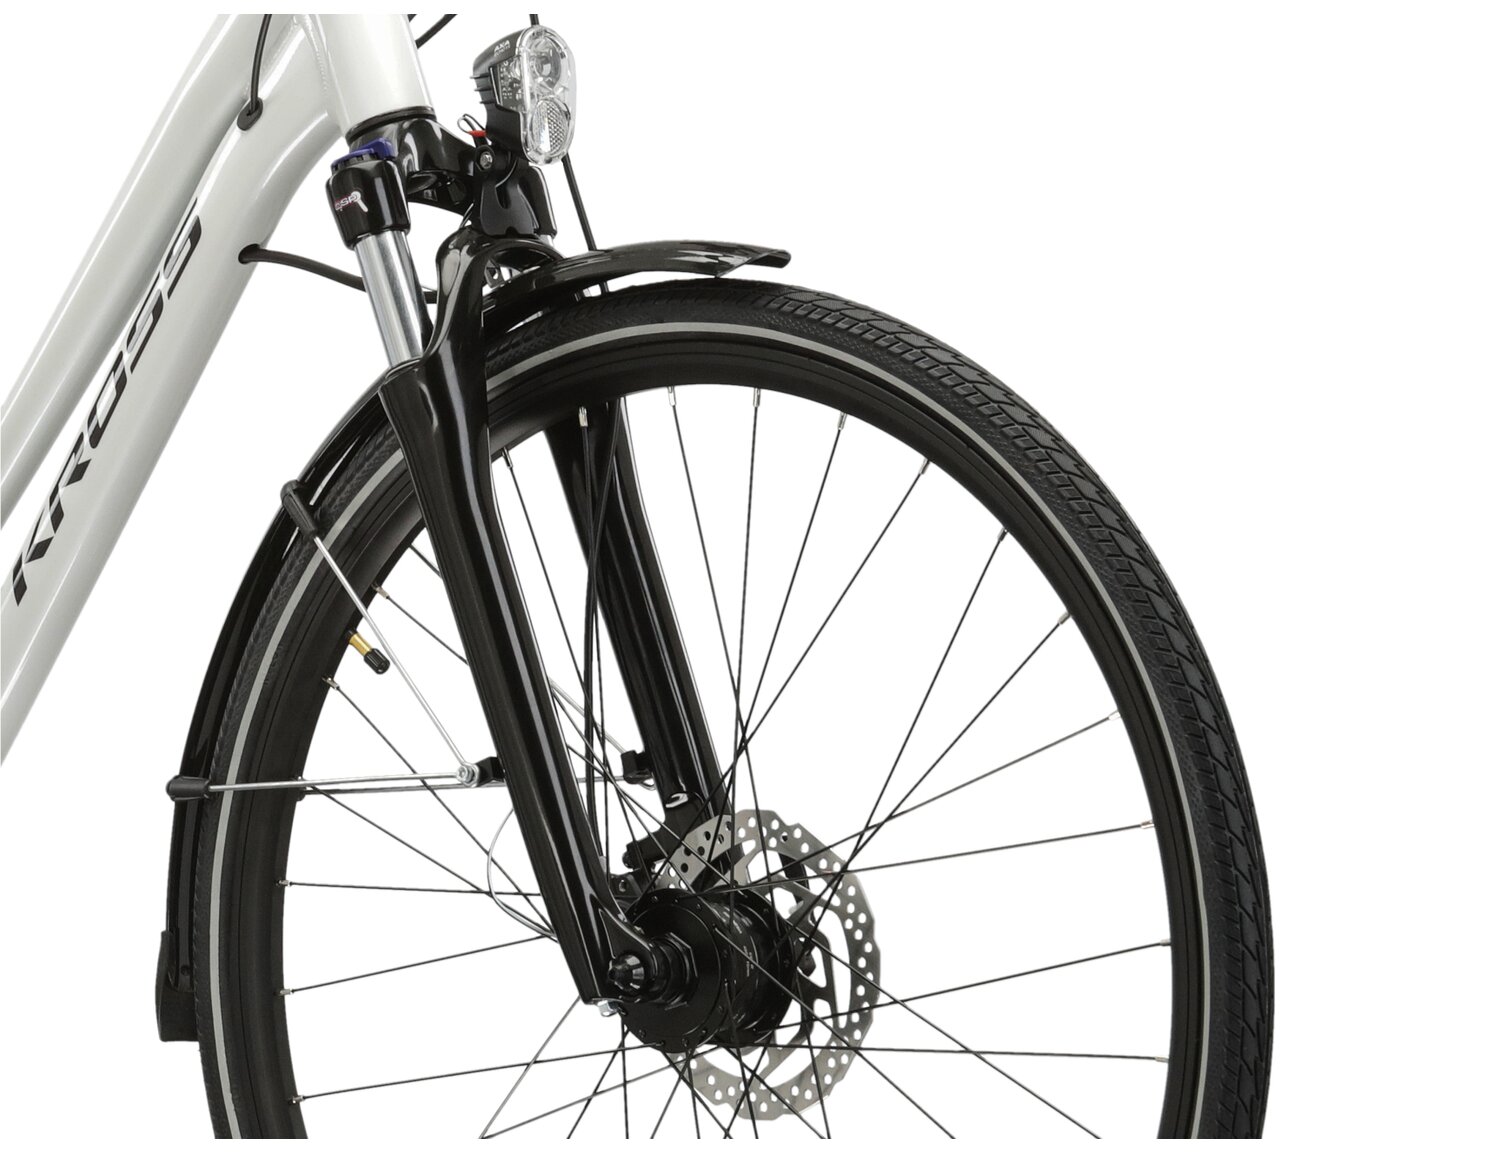  Aluminiowa rama, amortyzowany widelec SR Suntour NEX HLO oraz opony Wanda P1024 w rowerze trekkingowym Kross Trans 5.0 damskim 